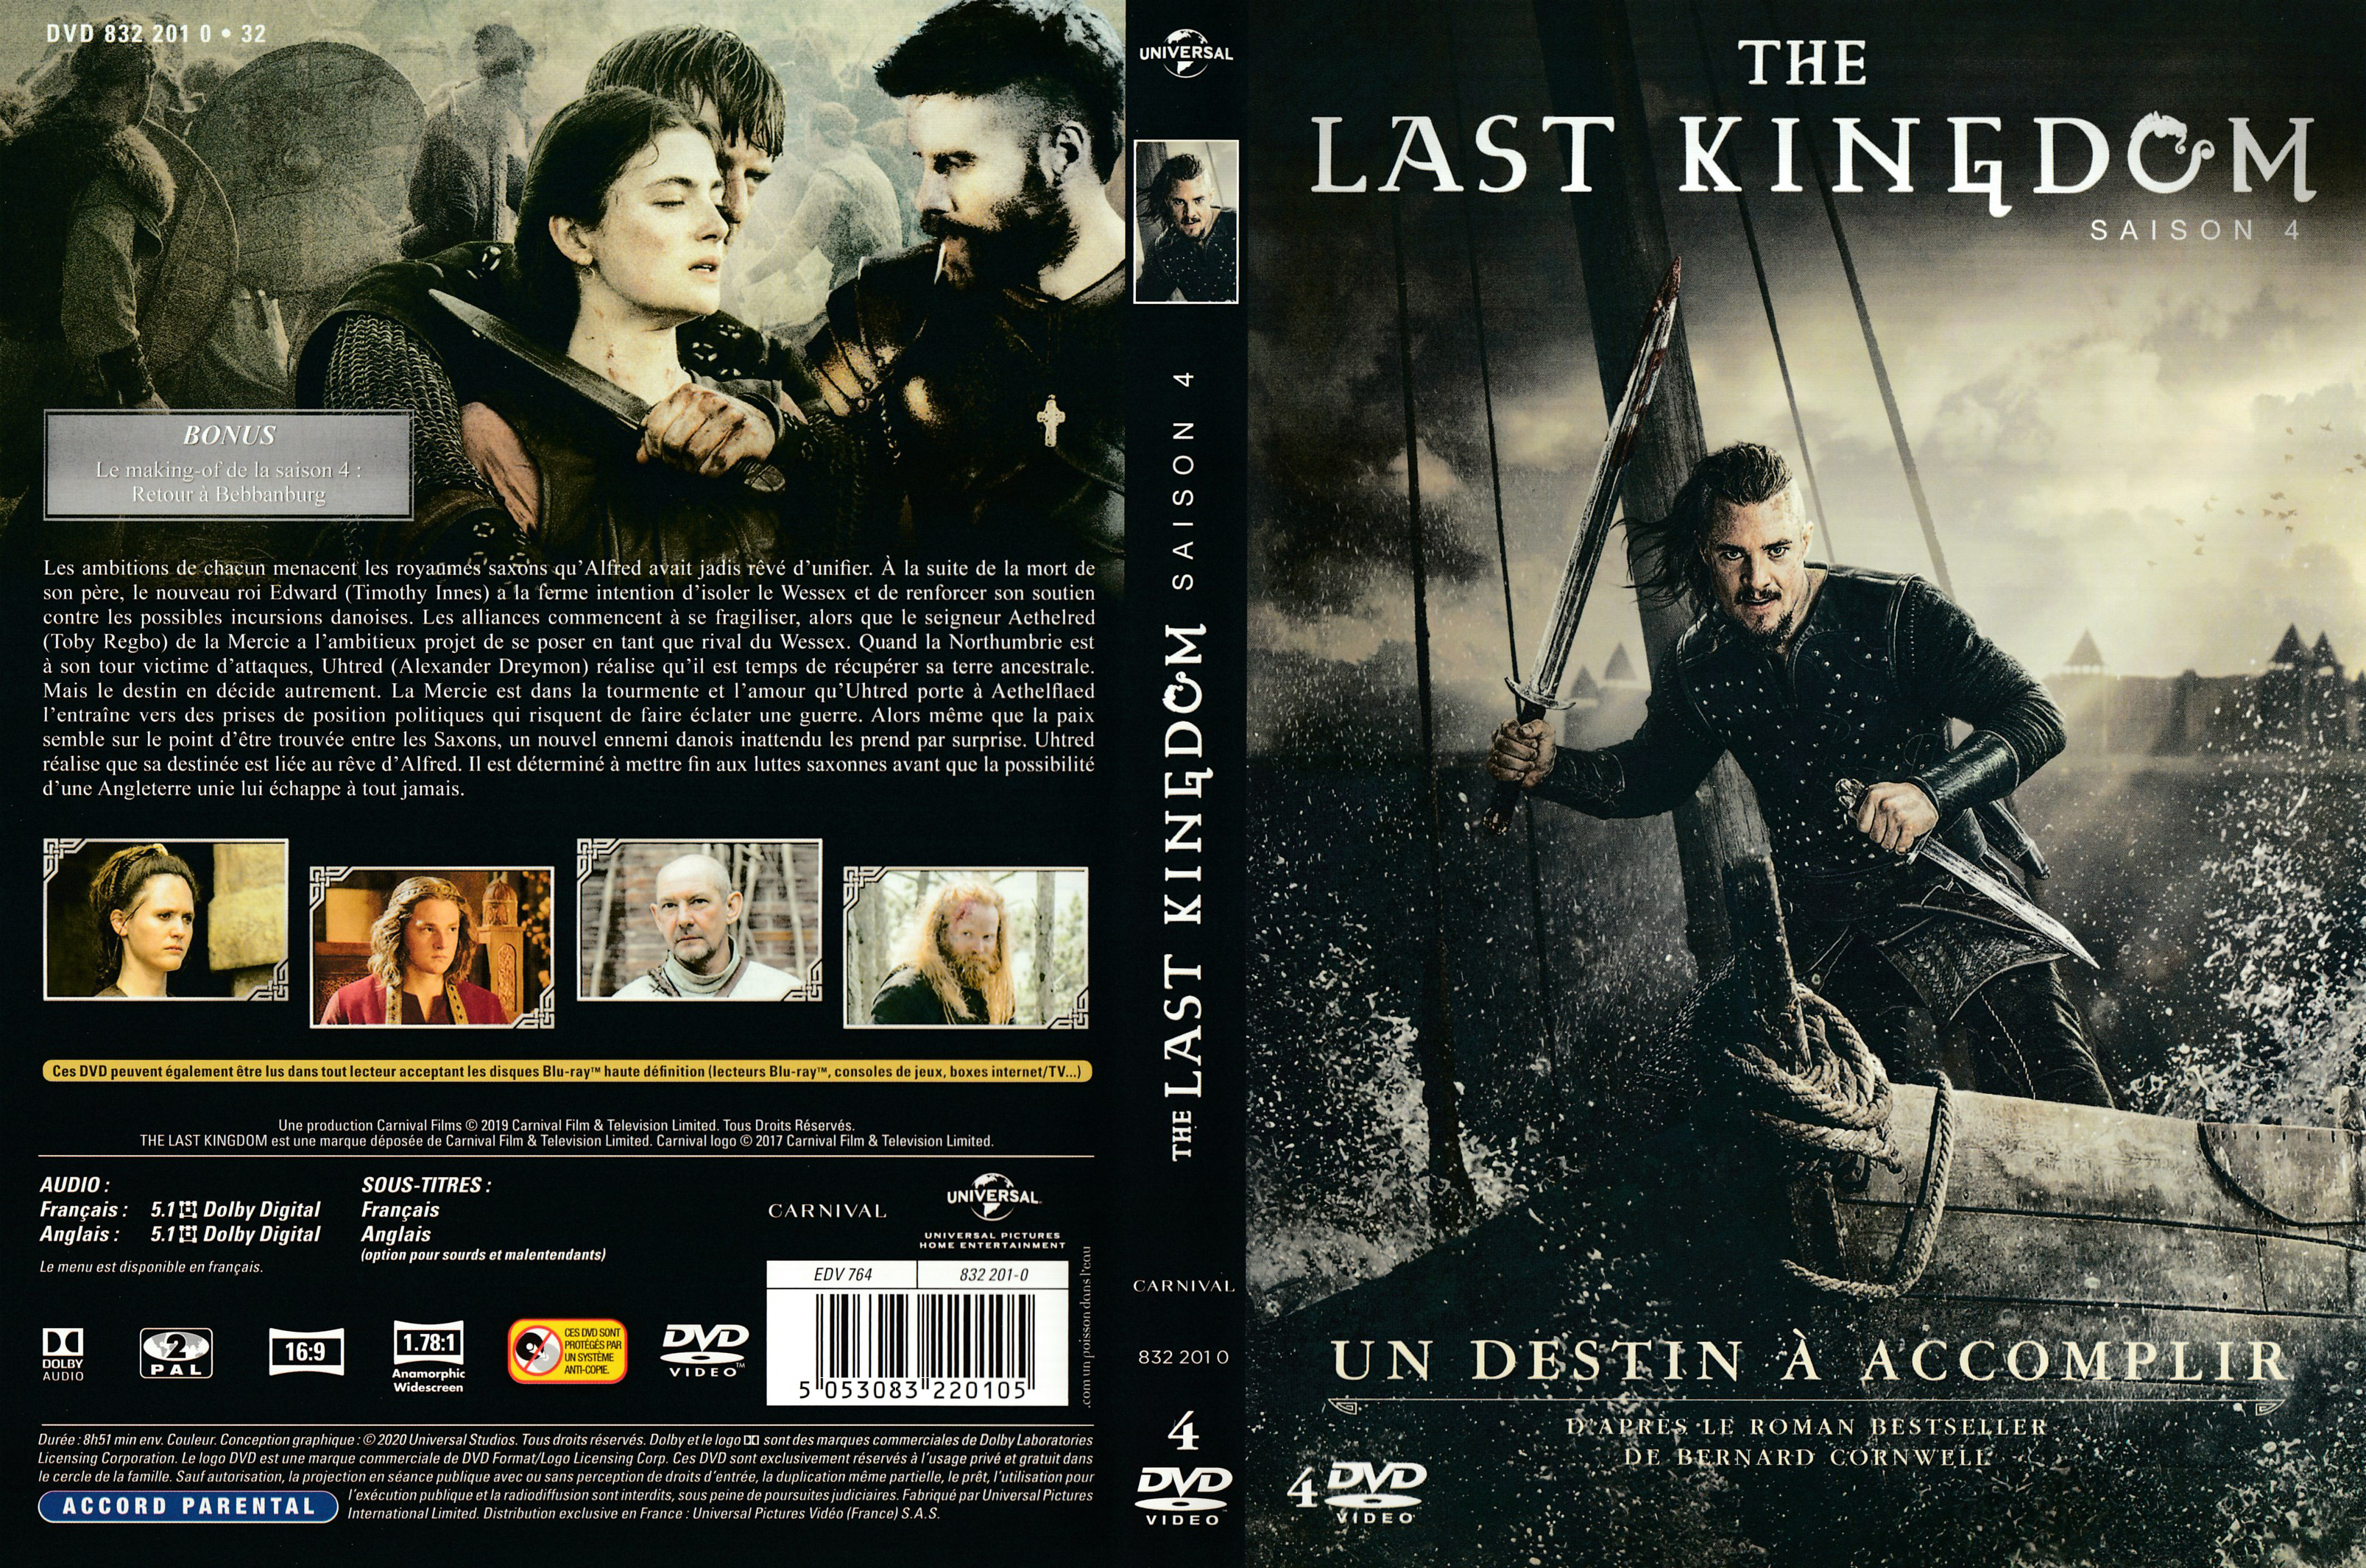 Jaquette DVD The last kingdom saison 4